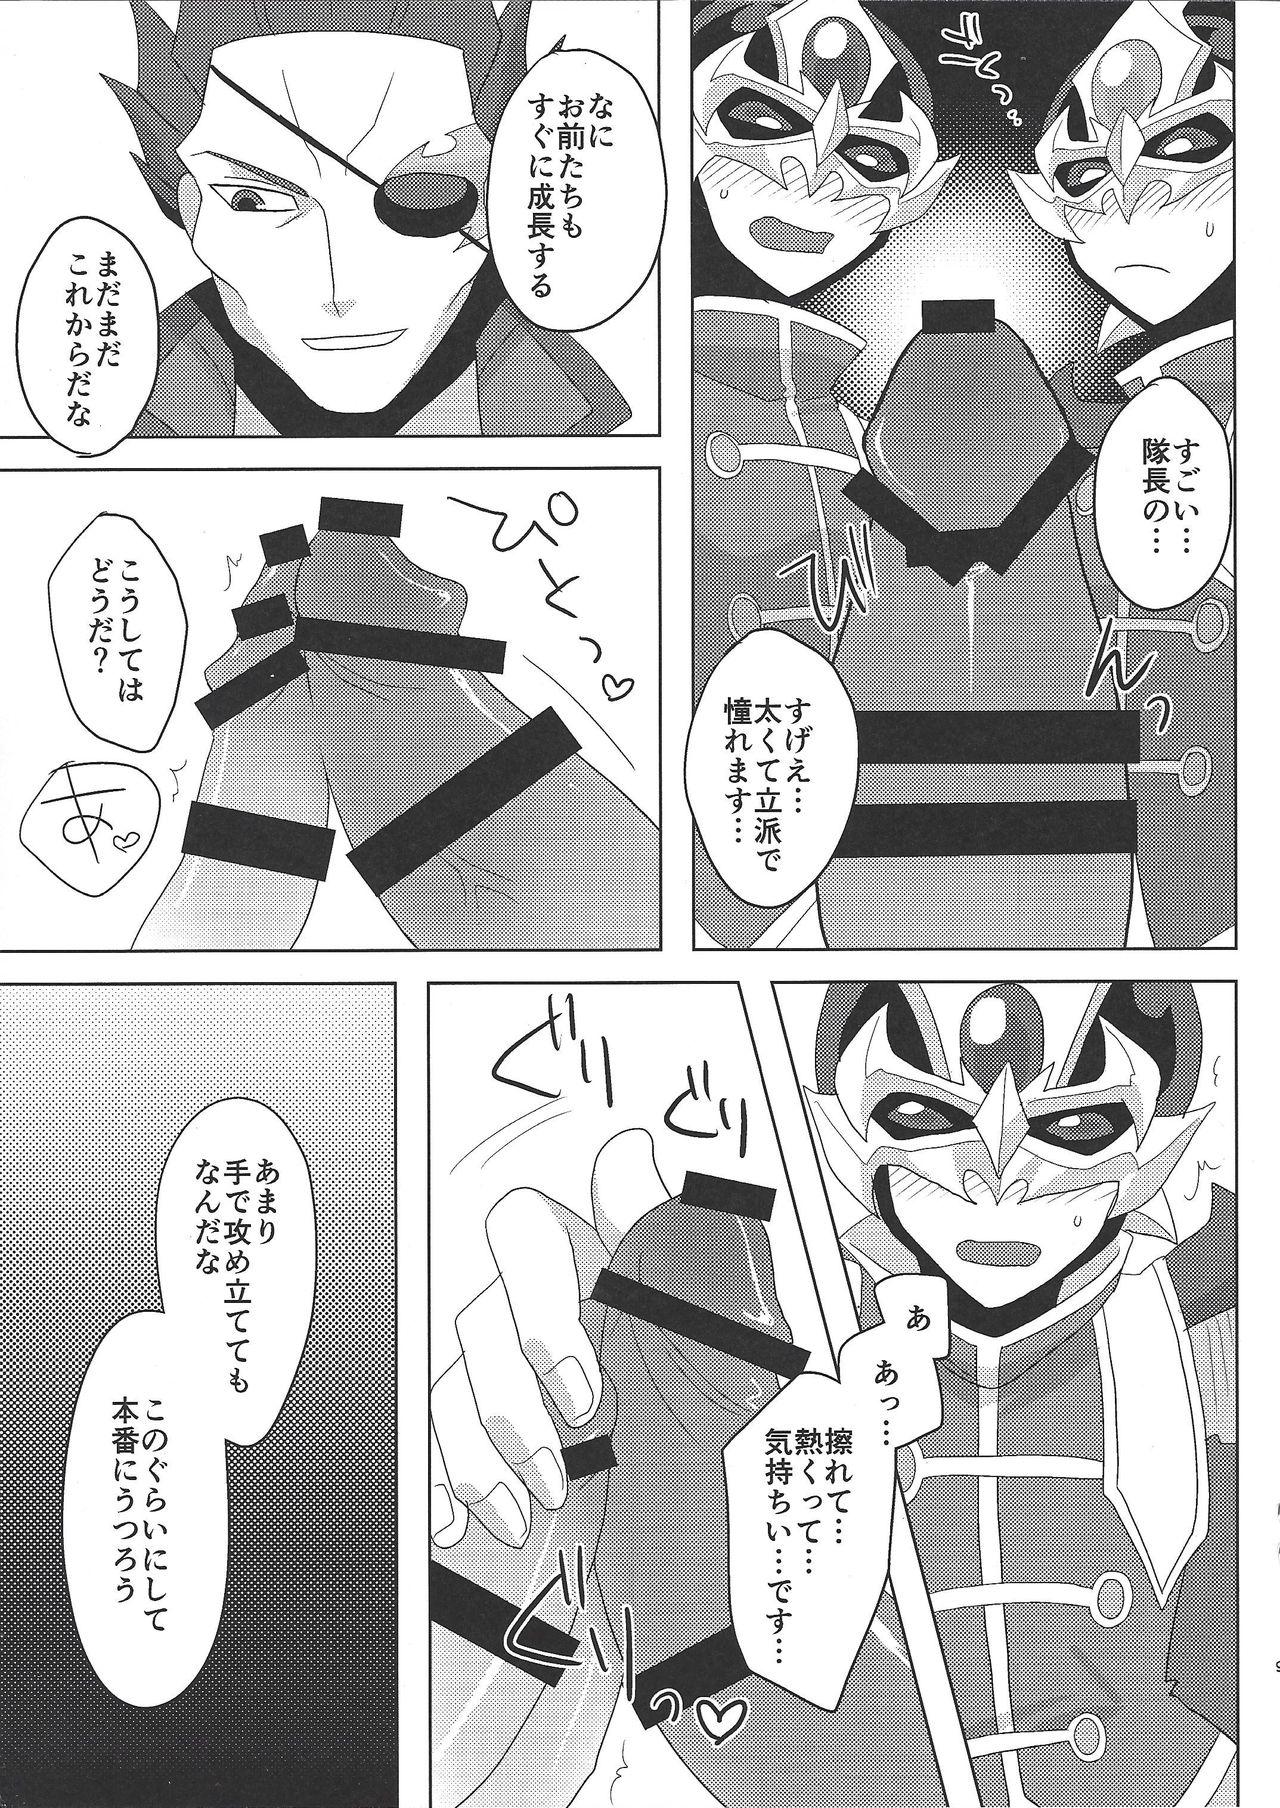 Tall Taichō! Kon'ya mo onegai shimasu! - Yu-gi-oh arc-v Ginger - Page 8